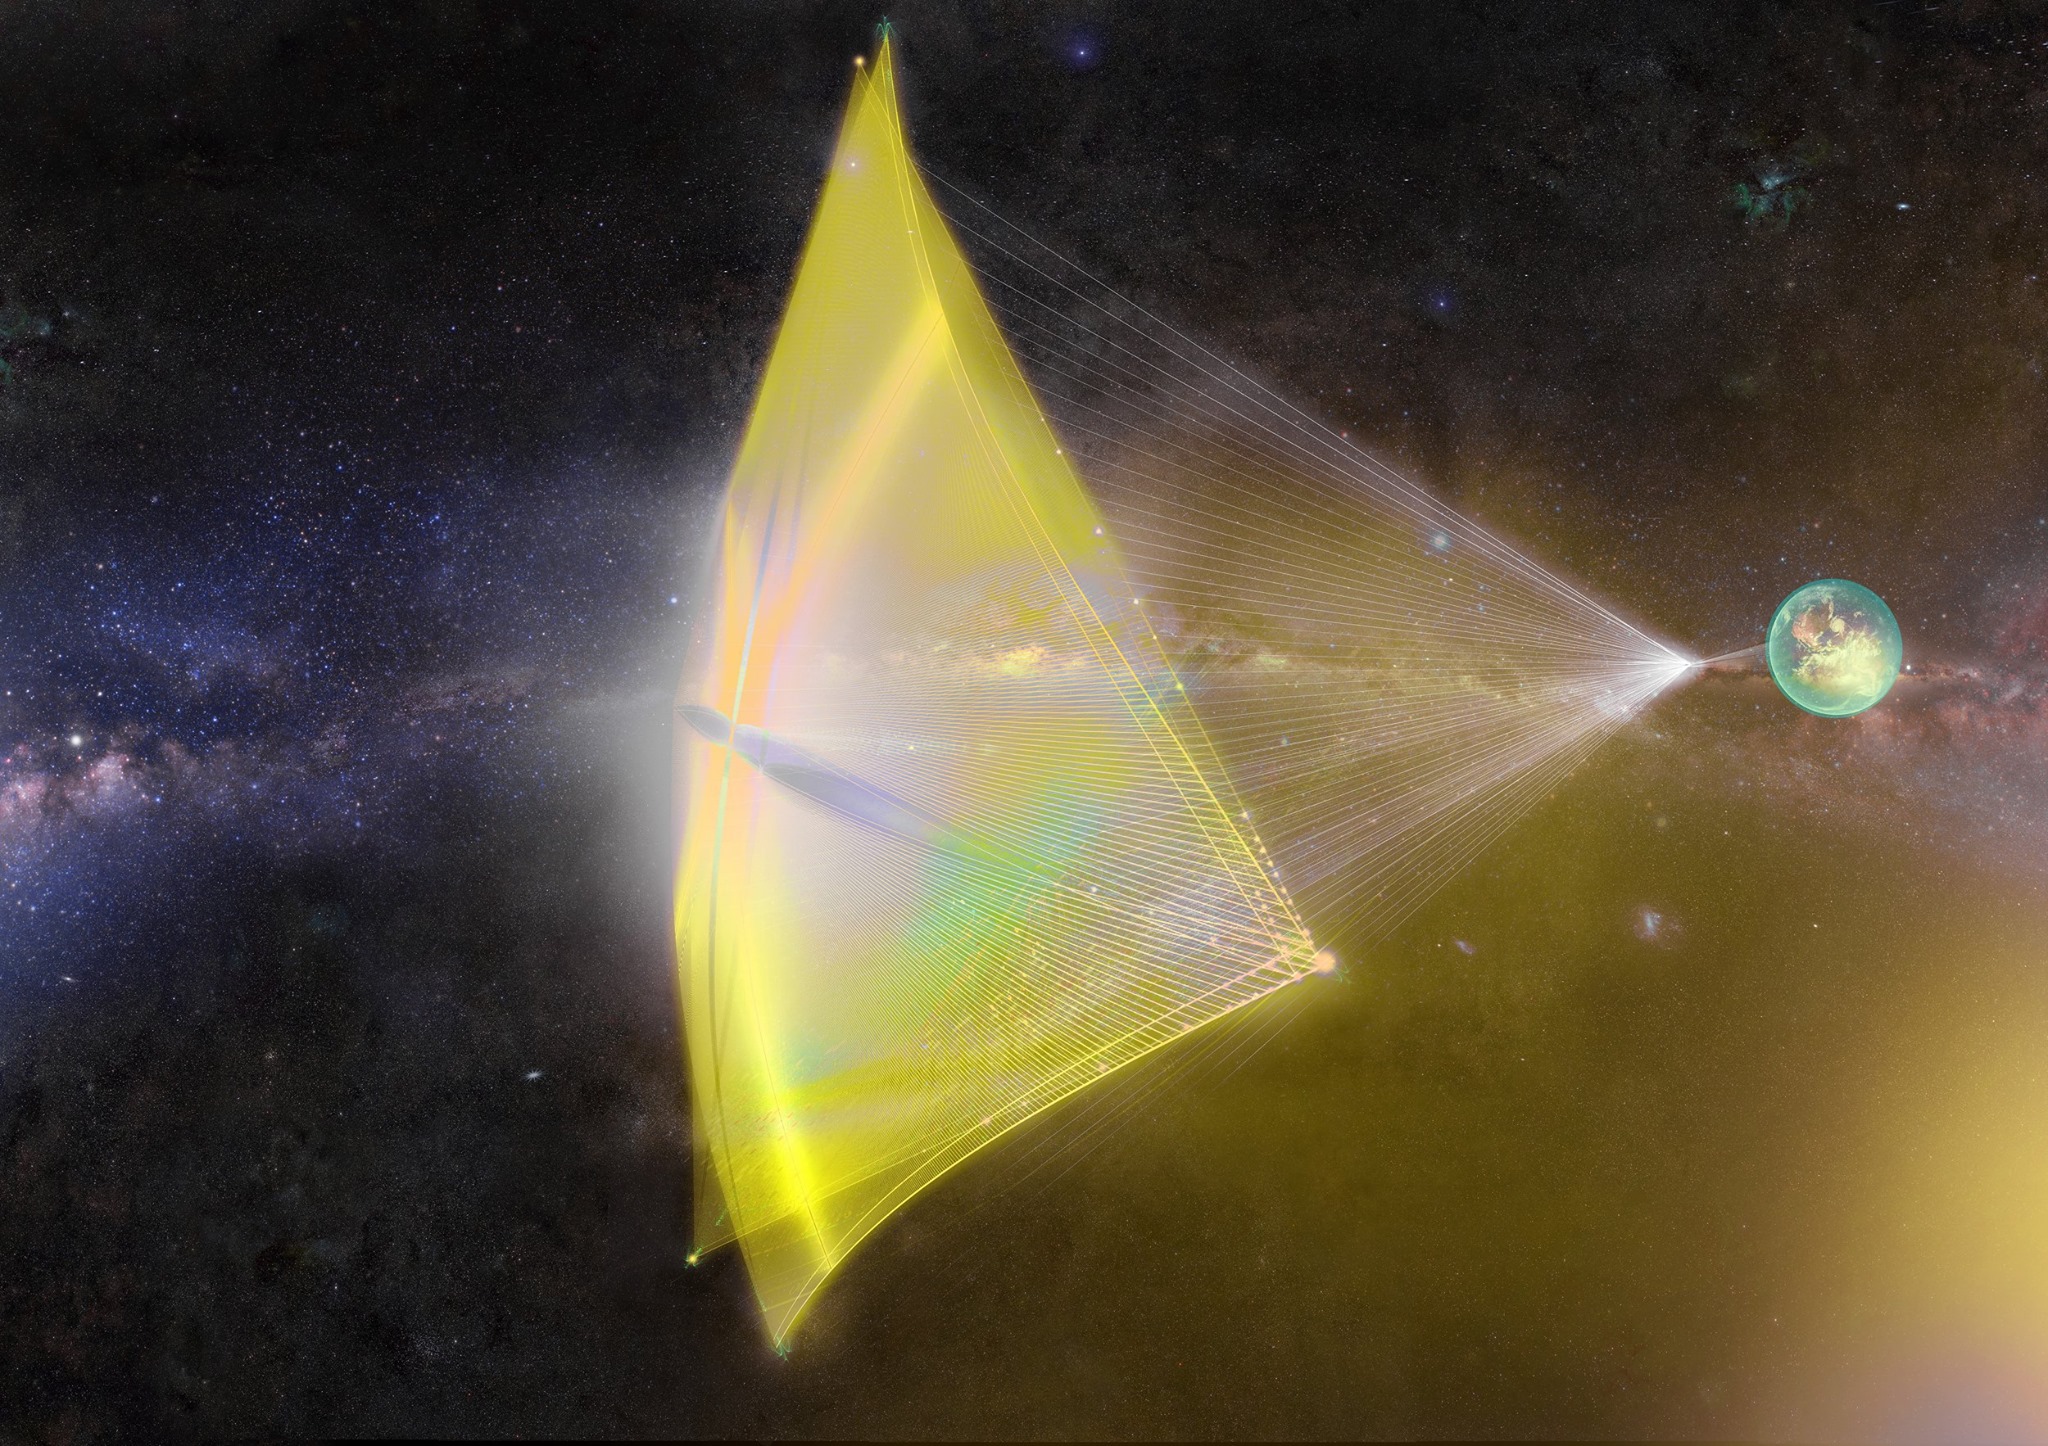 Breakthrough Starshot wants to send spaceships to Alpha Centauri.